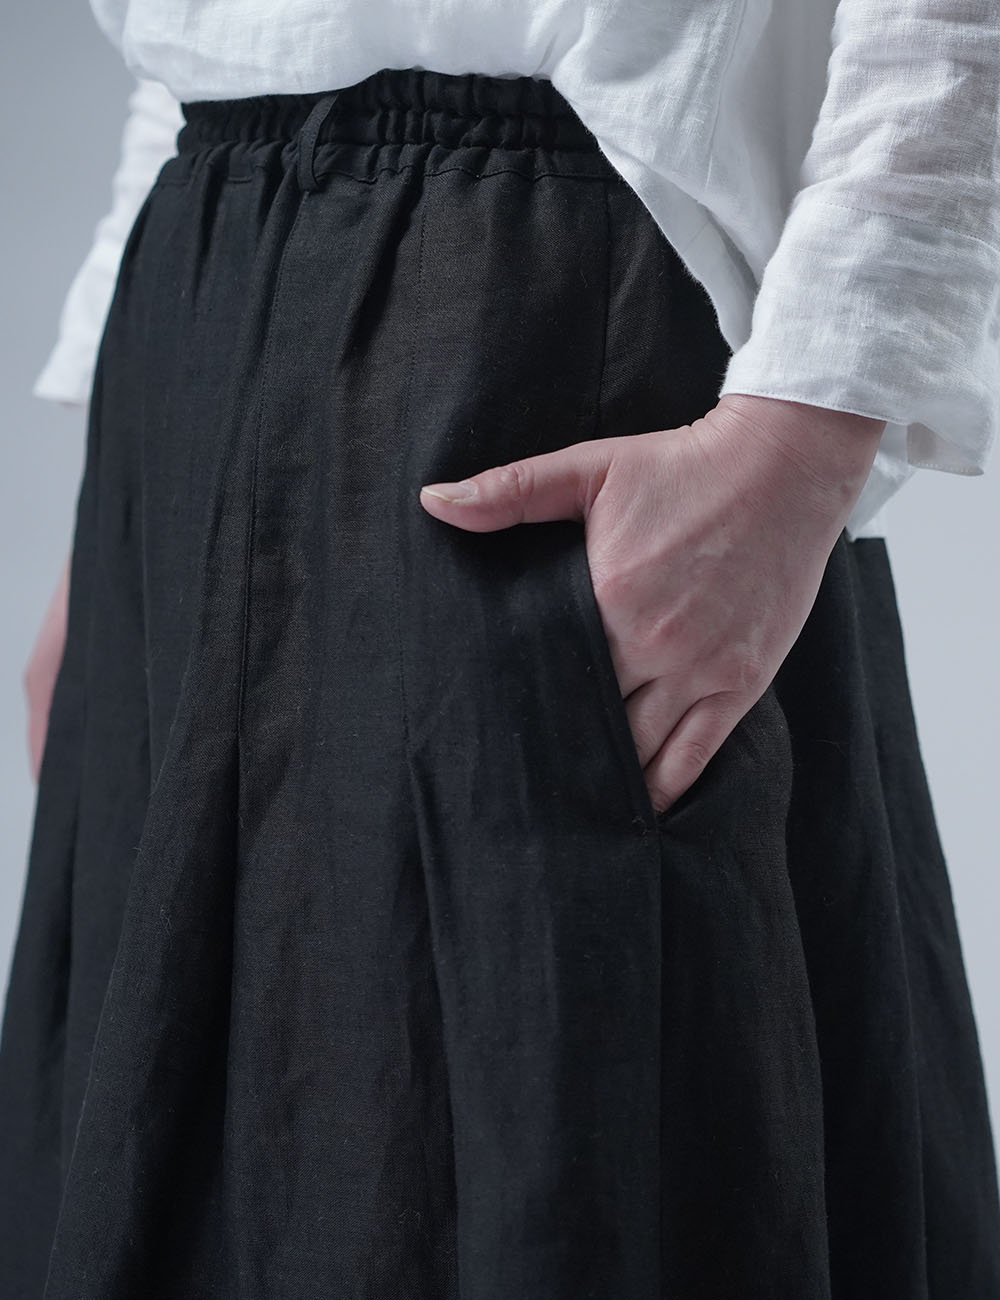 【wafu】Linen Pants 袴(はかま)パンツ/黒 b002k-bck1